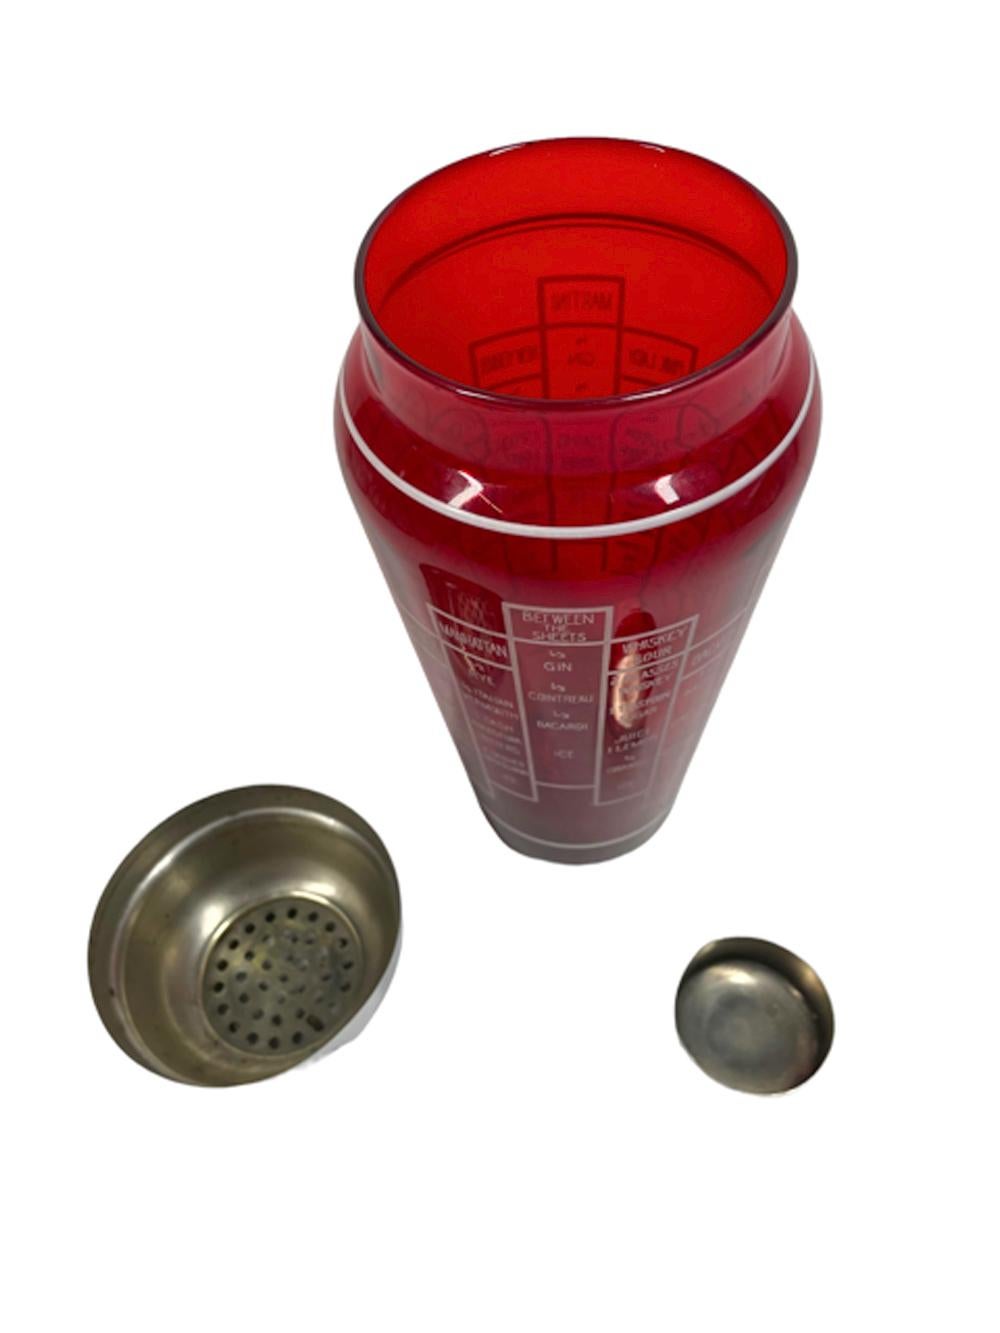 Art Déco-Cocktailshaker aus rubinrotem Glas in konischer, geschulterter Form mit 2-teiligem, verchromtem Kuppeldeckel mit integriertem Sieb. Die Außenseite des Shakers mit weißer Grafik hat vertikale Stapel von Blöcken mit Rezepten für 16 Cocktails.